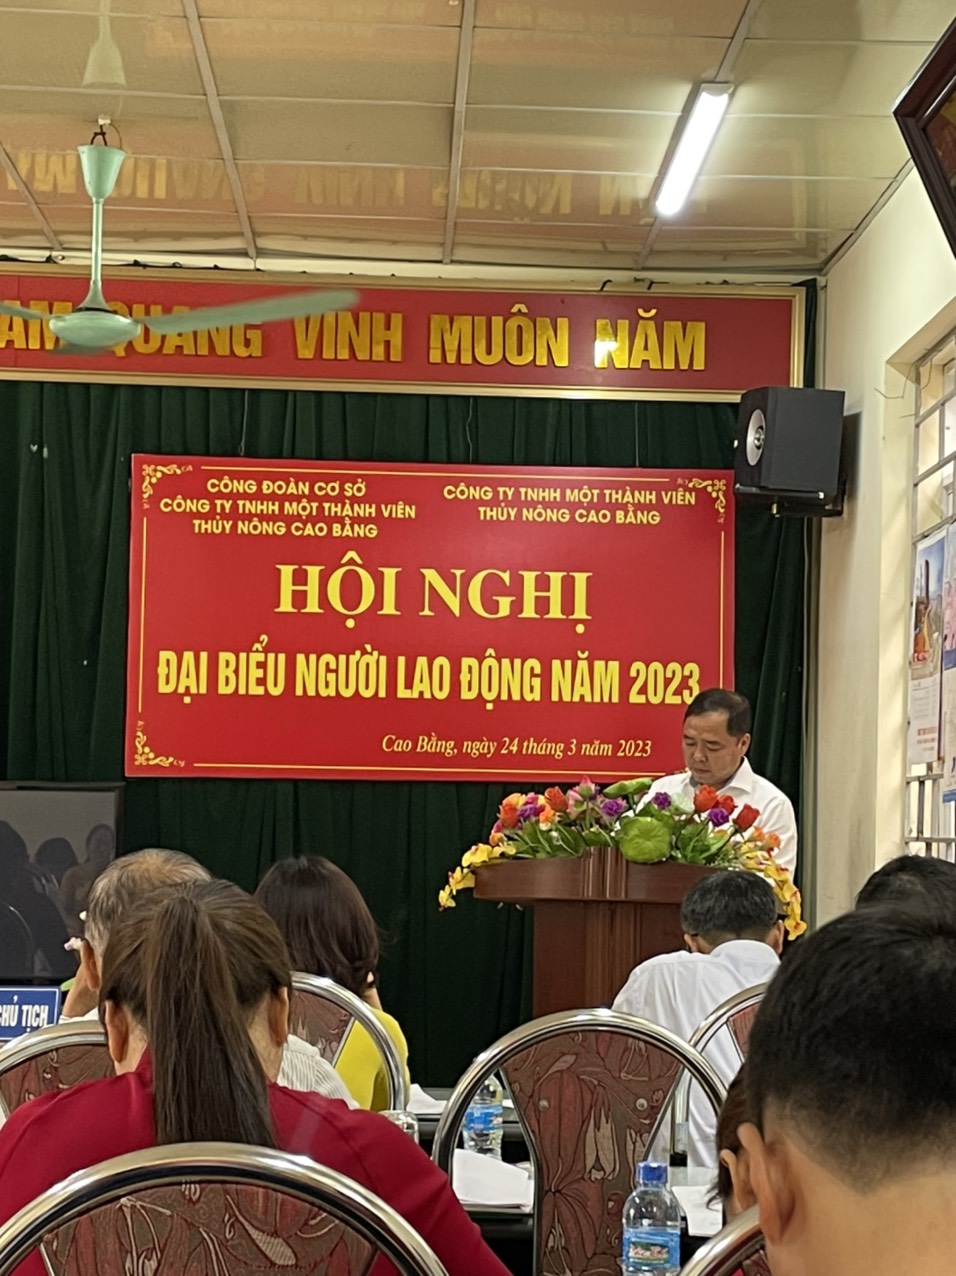 Đồng chí Trần Đức Minh - Phó Giám đốc công ty phát biểu khai mạc hội nghị